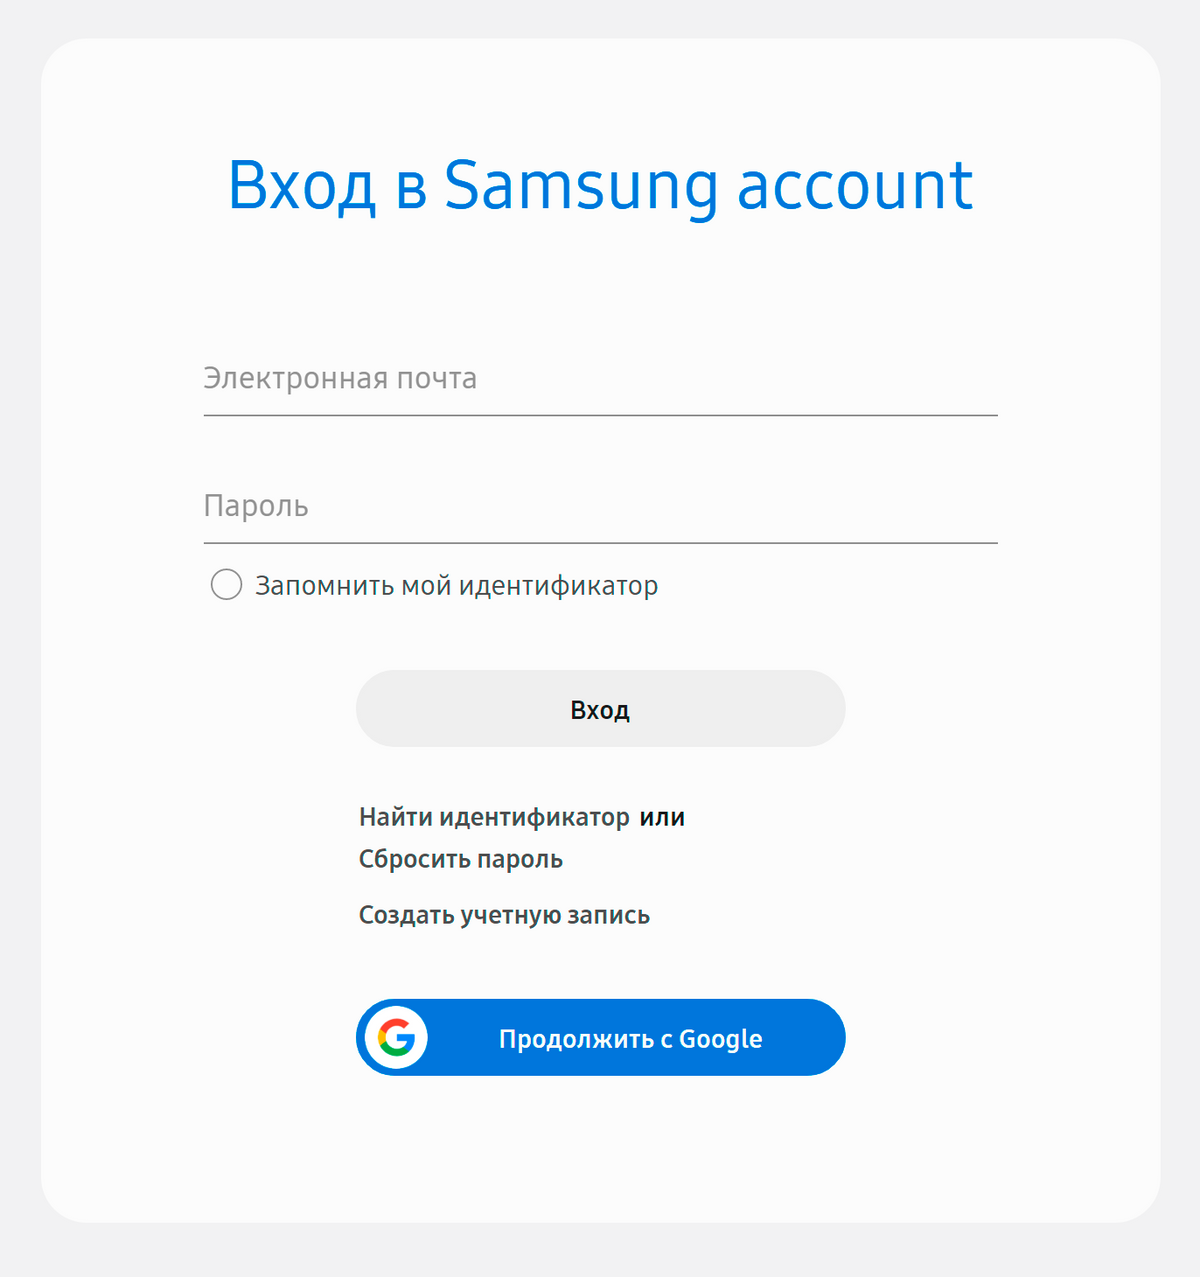 Войдите в аккаунт «Самсунг» с помощью логина и пароля или данных гугл-аккаунта